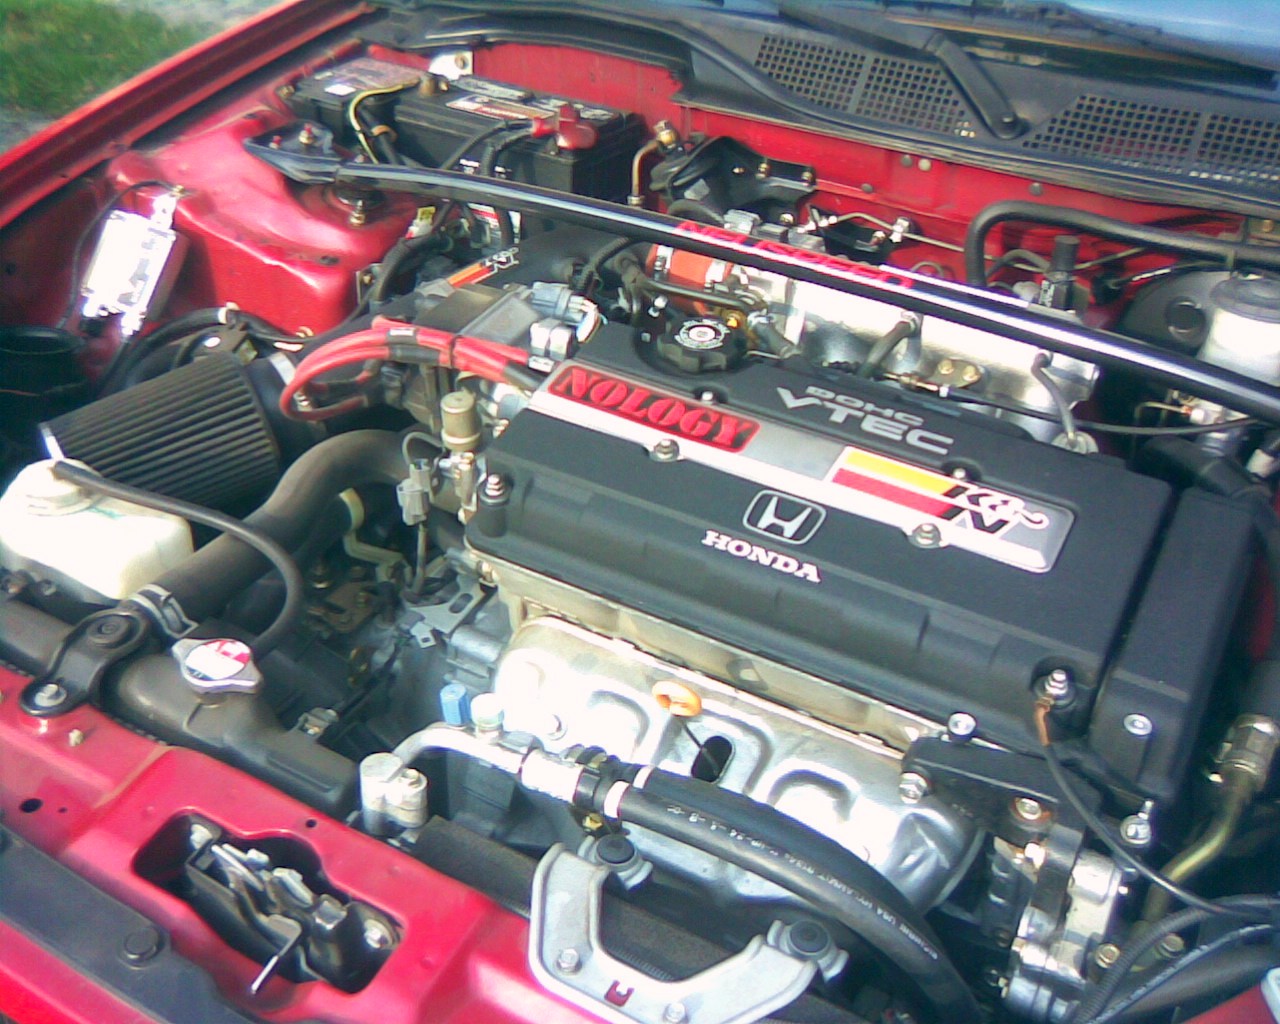 2000 Honda civic si engine spec #1